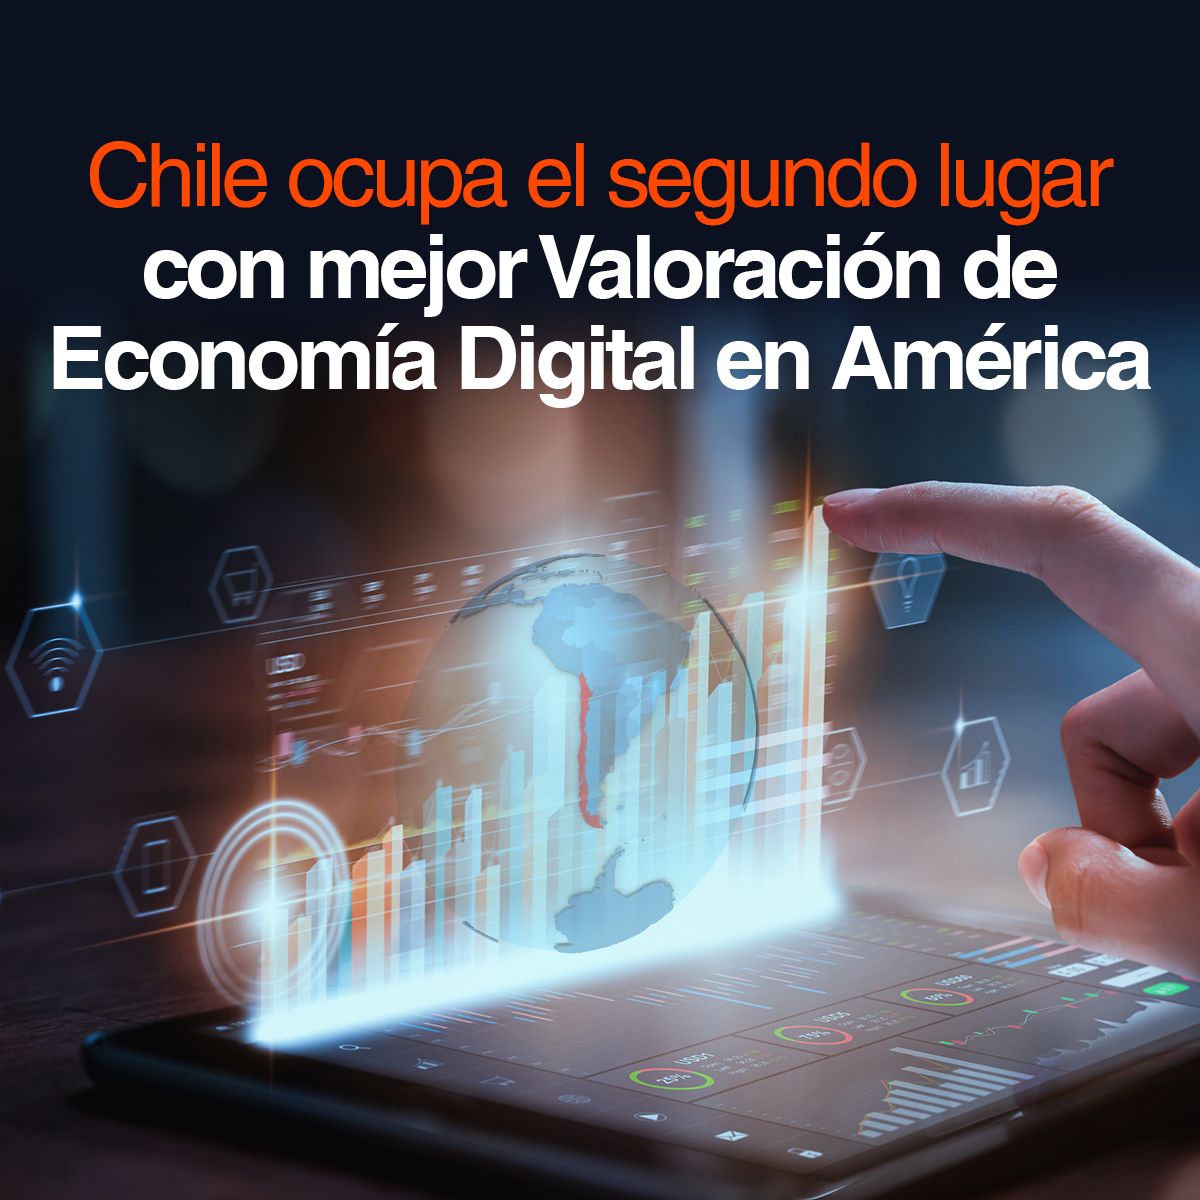 Chile ocupa el segundo lugar con mejor Valoración de Economía Digital en América